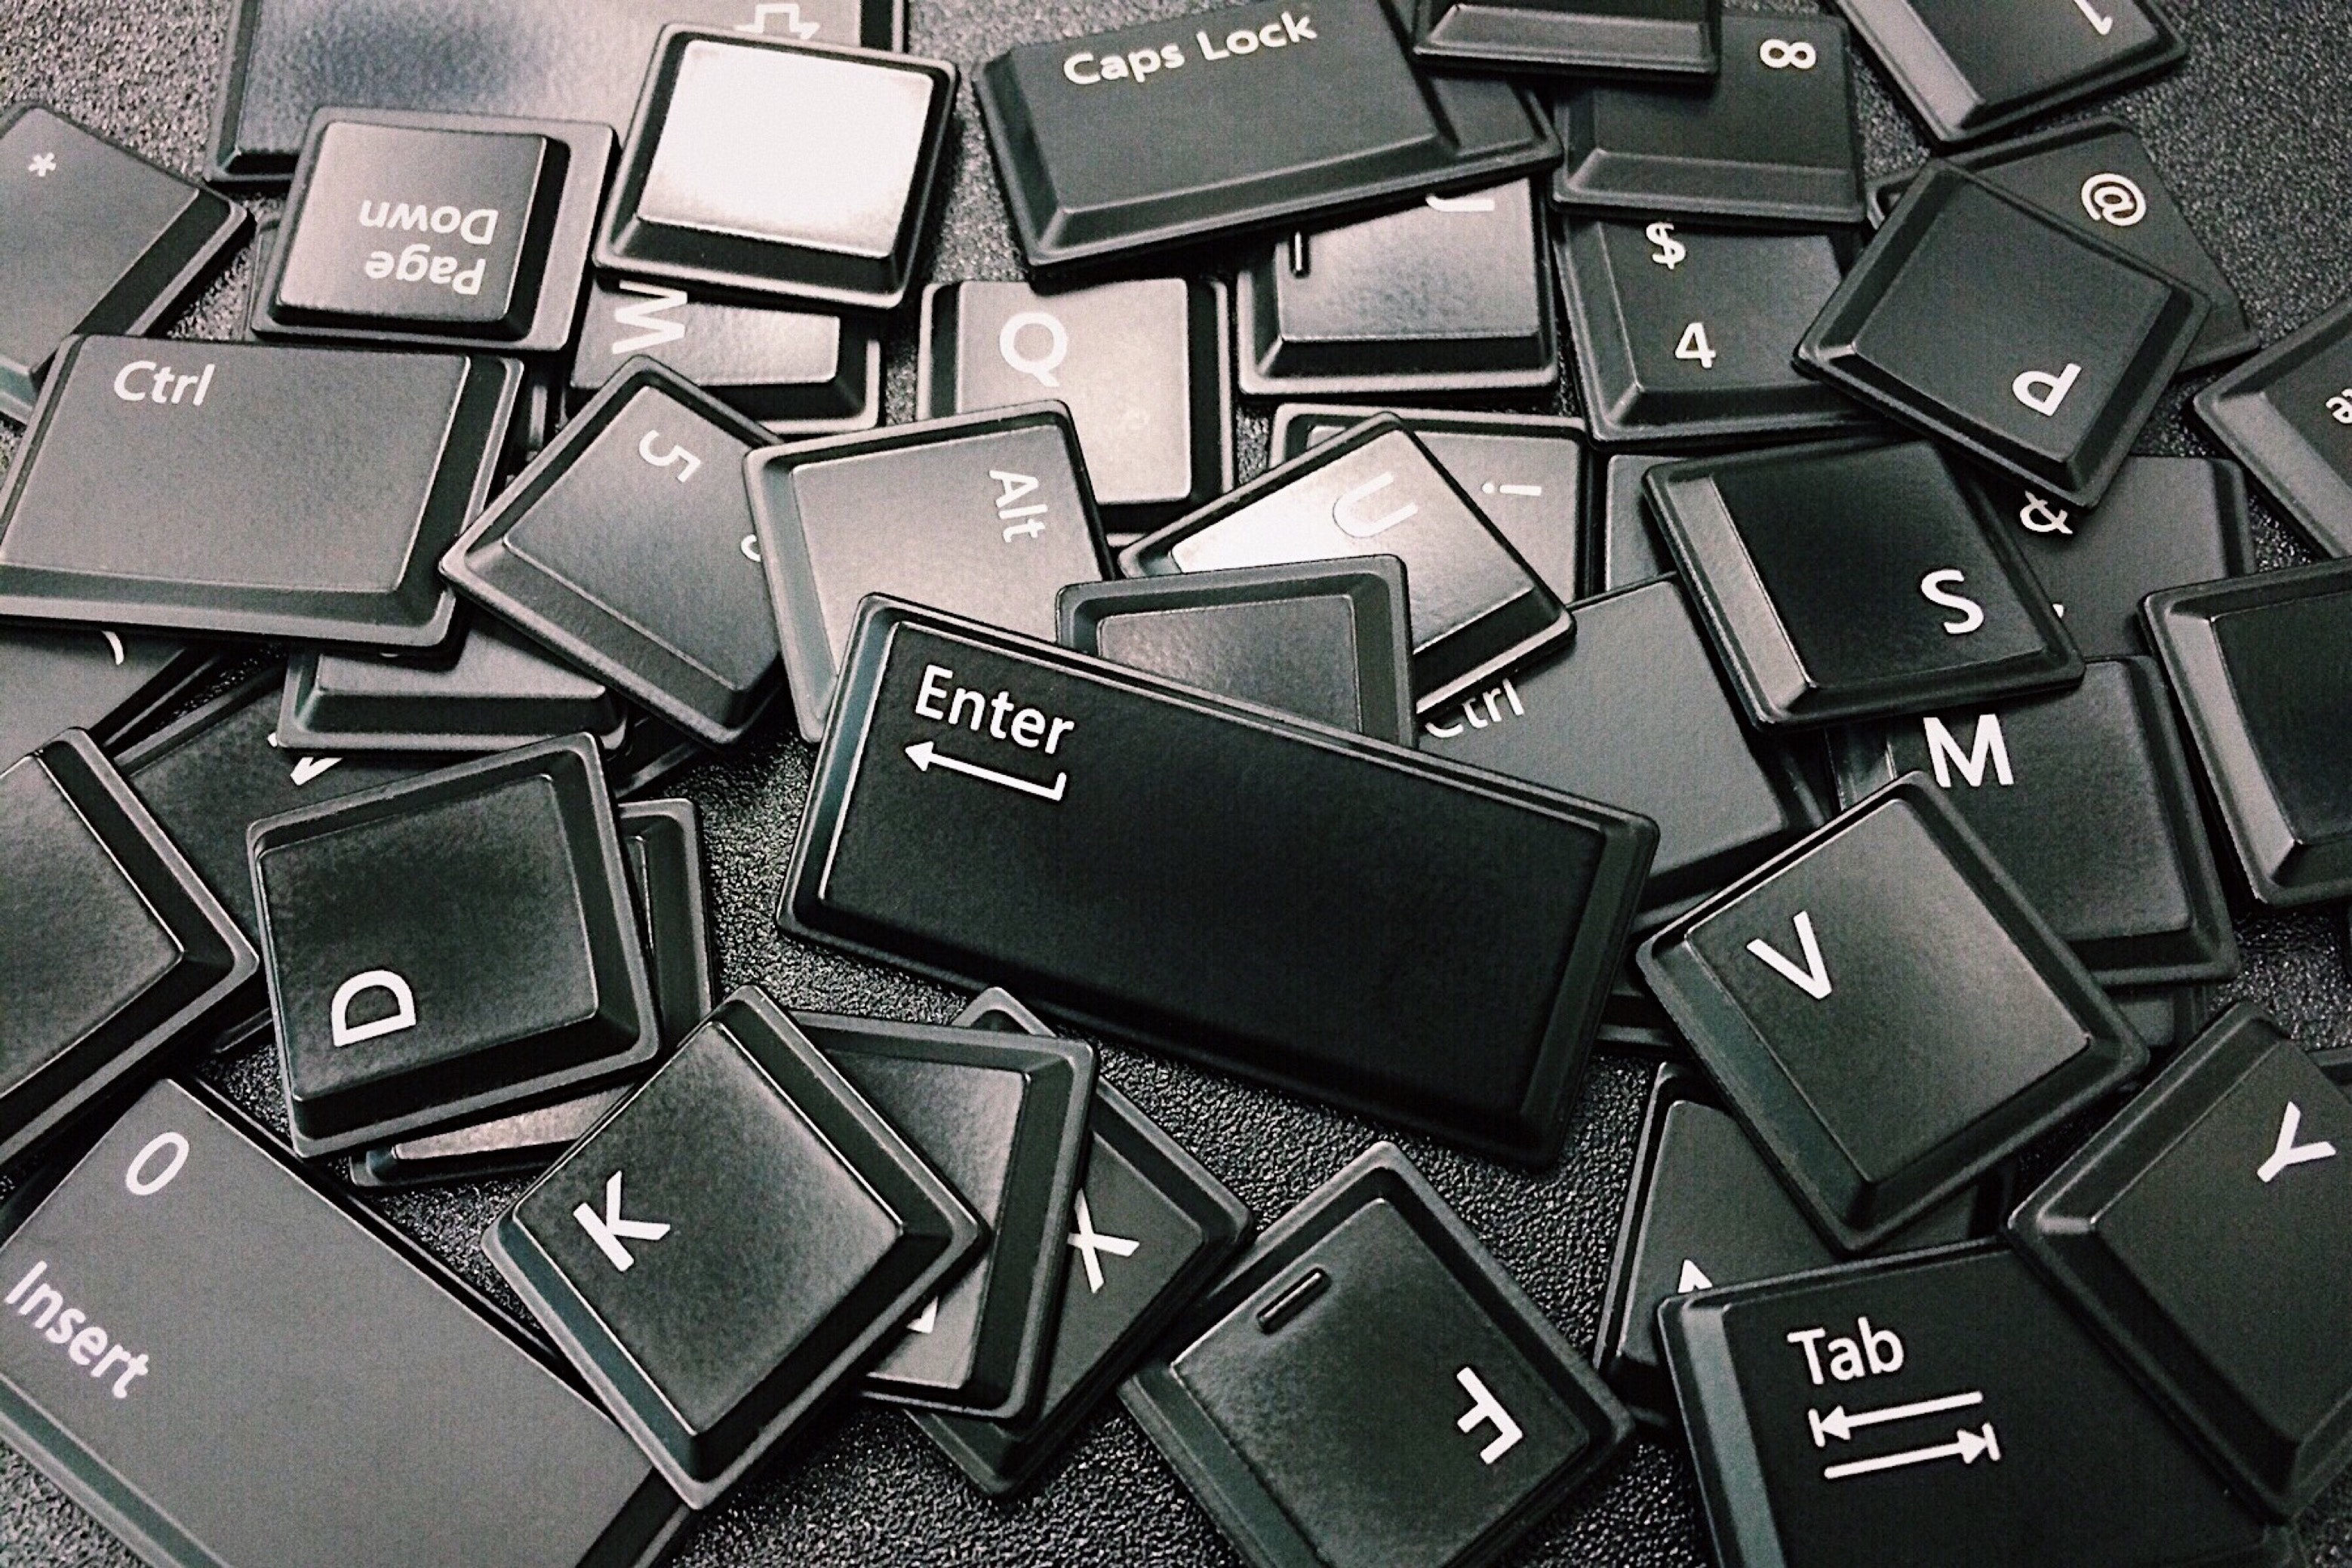 Las teclas por separado si pueden lavarse, pero hay que carlas totalmente antes de armar el teclado (Crédito: pixbay)